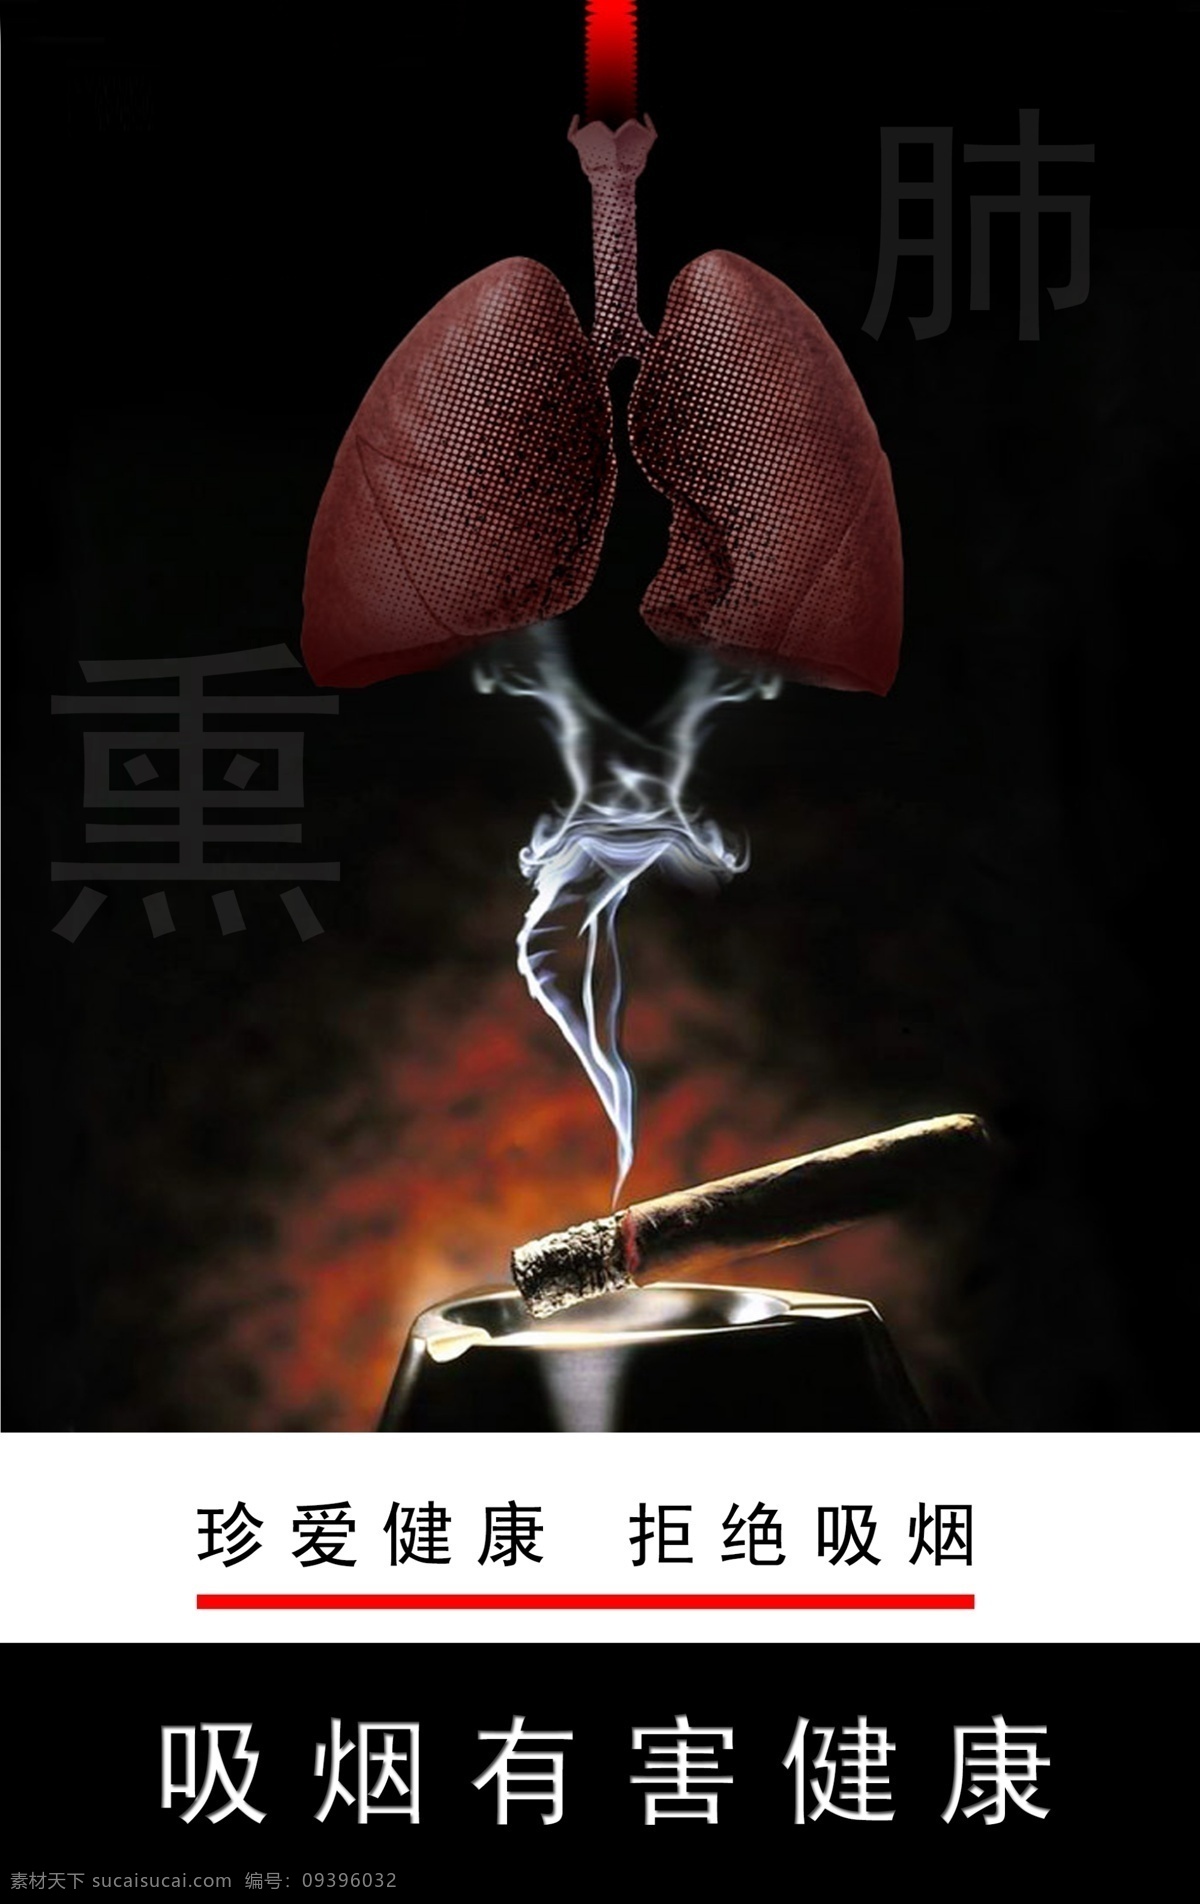 吸烟 有害 健康 肺部 禁烟海报 禁止吸烟 拒绝吸烟 吸烟有害 珍爱健康 吸烟肺部 其他海报设计